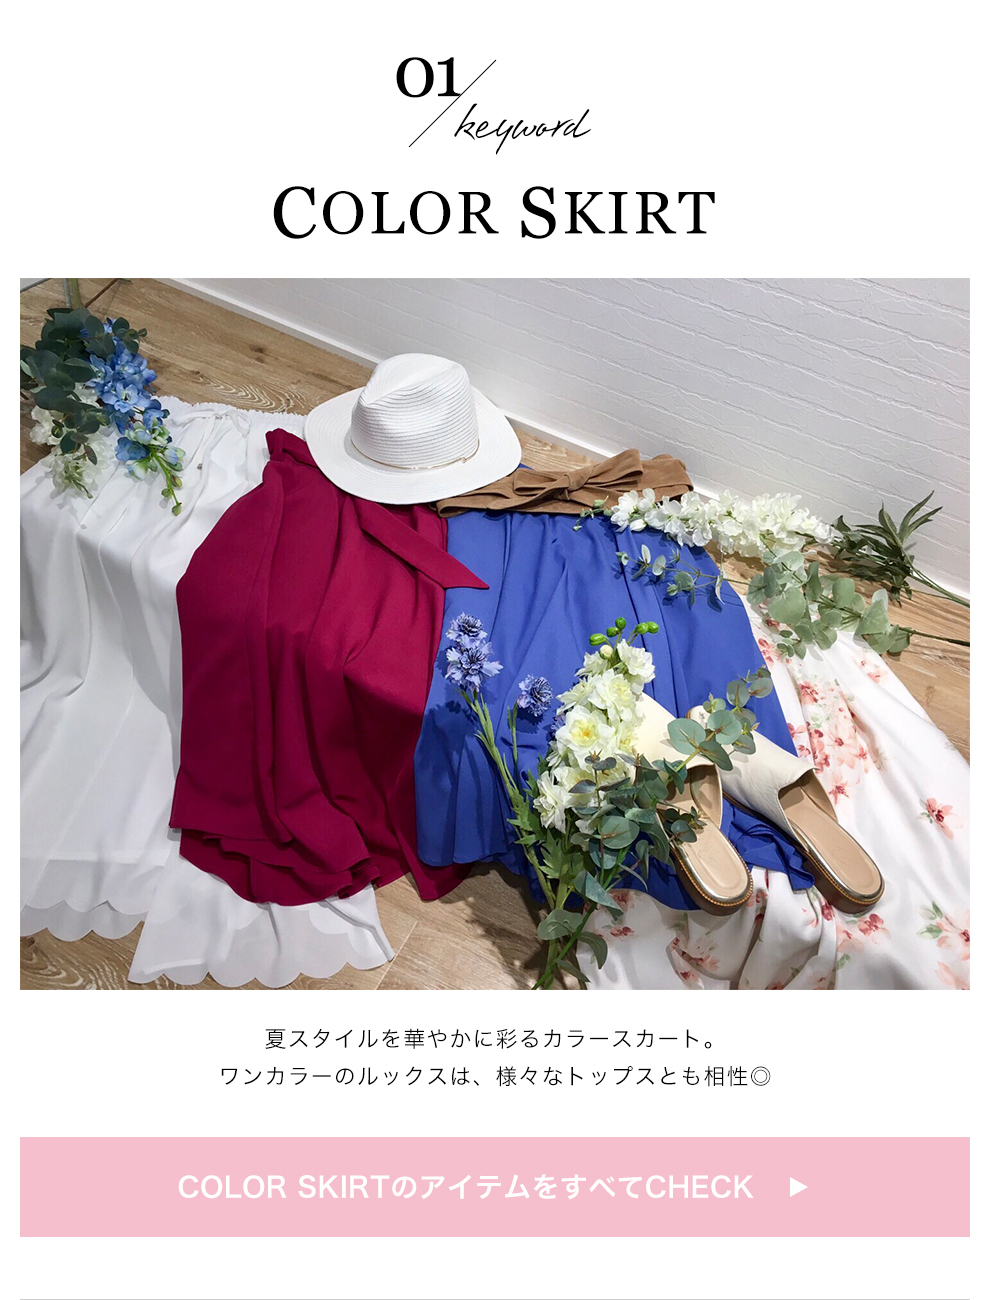 夏スタイルを華やかに彩るカラースカート。ワンカラーのルックスは、様々なトップスとも相性◎